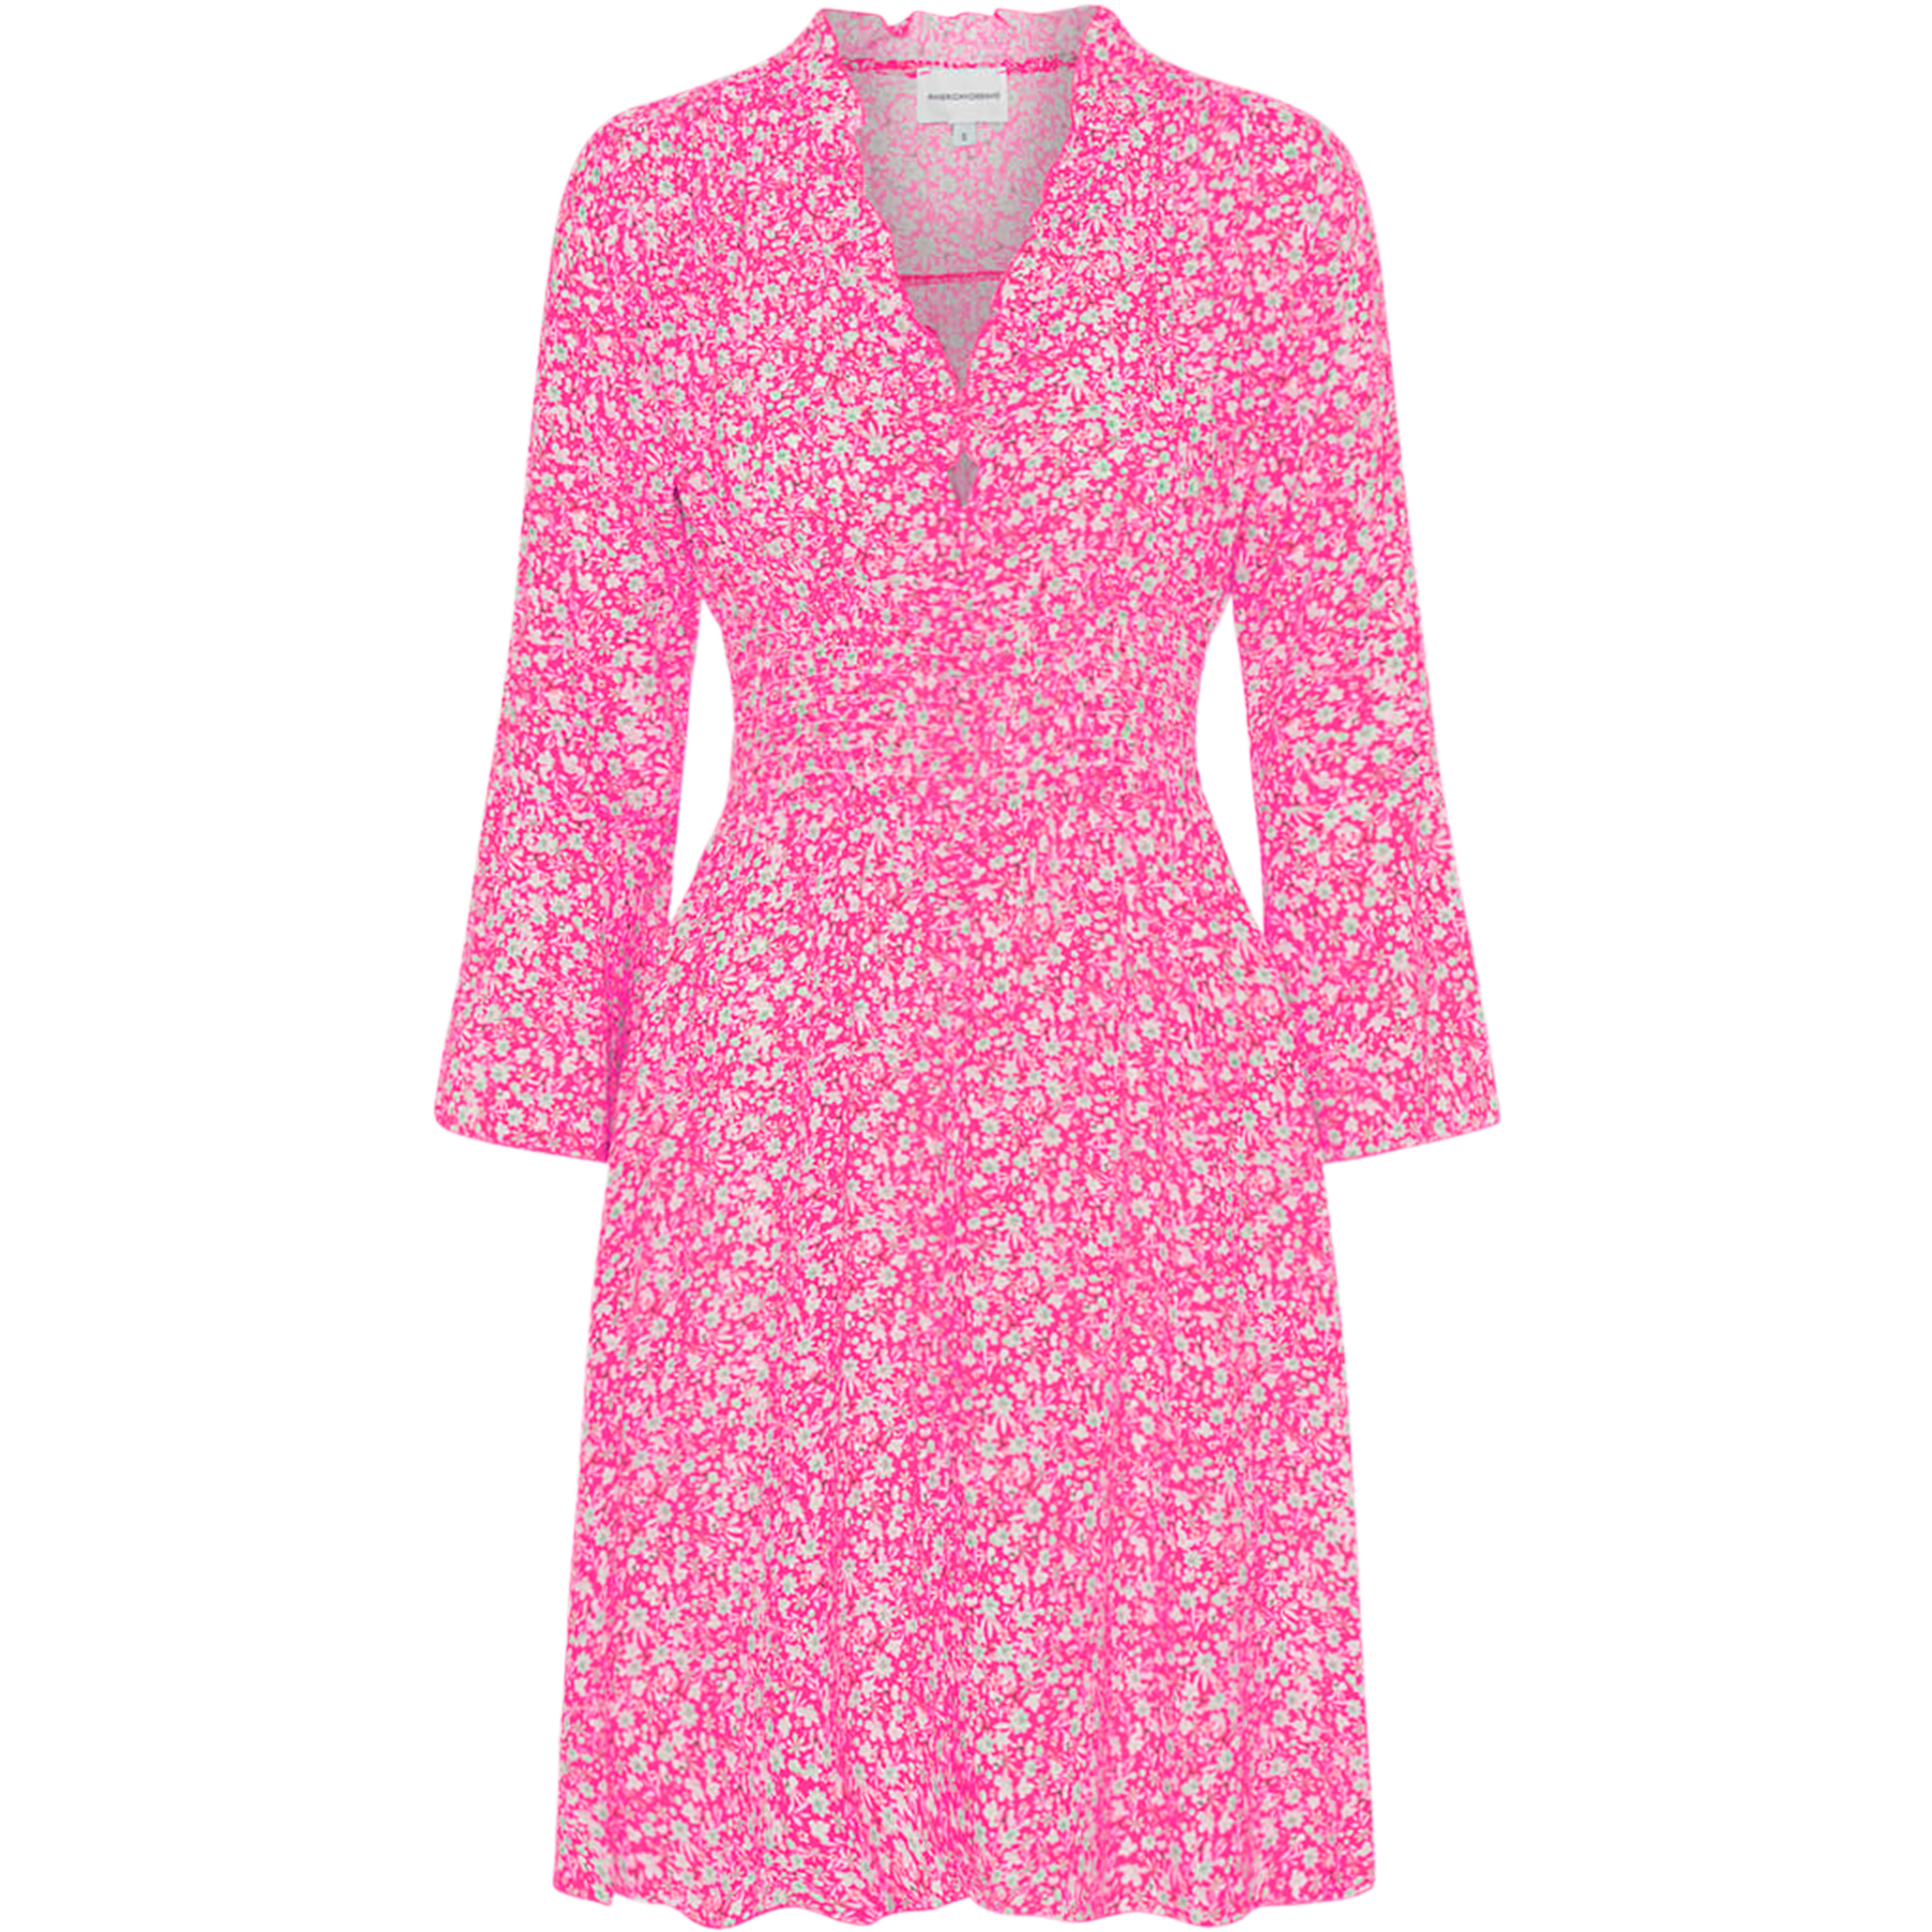 Sally Short Dress - Pink Flower